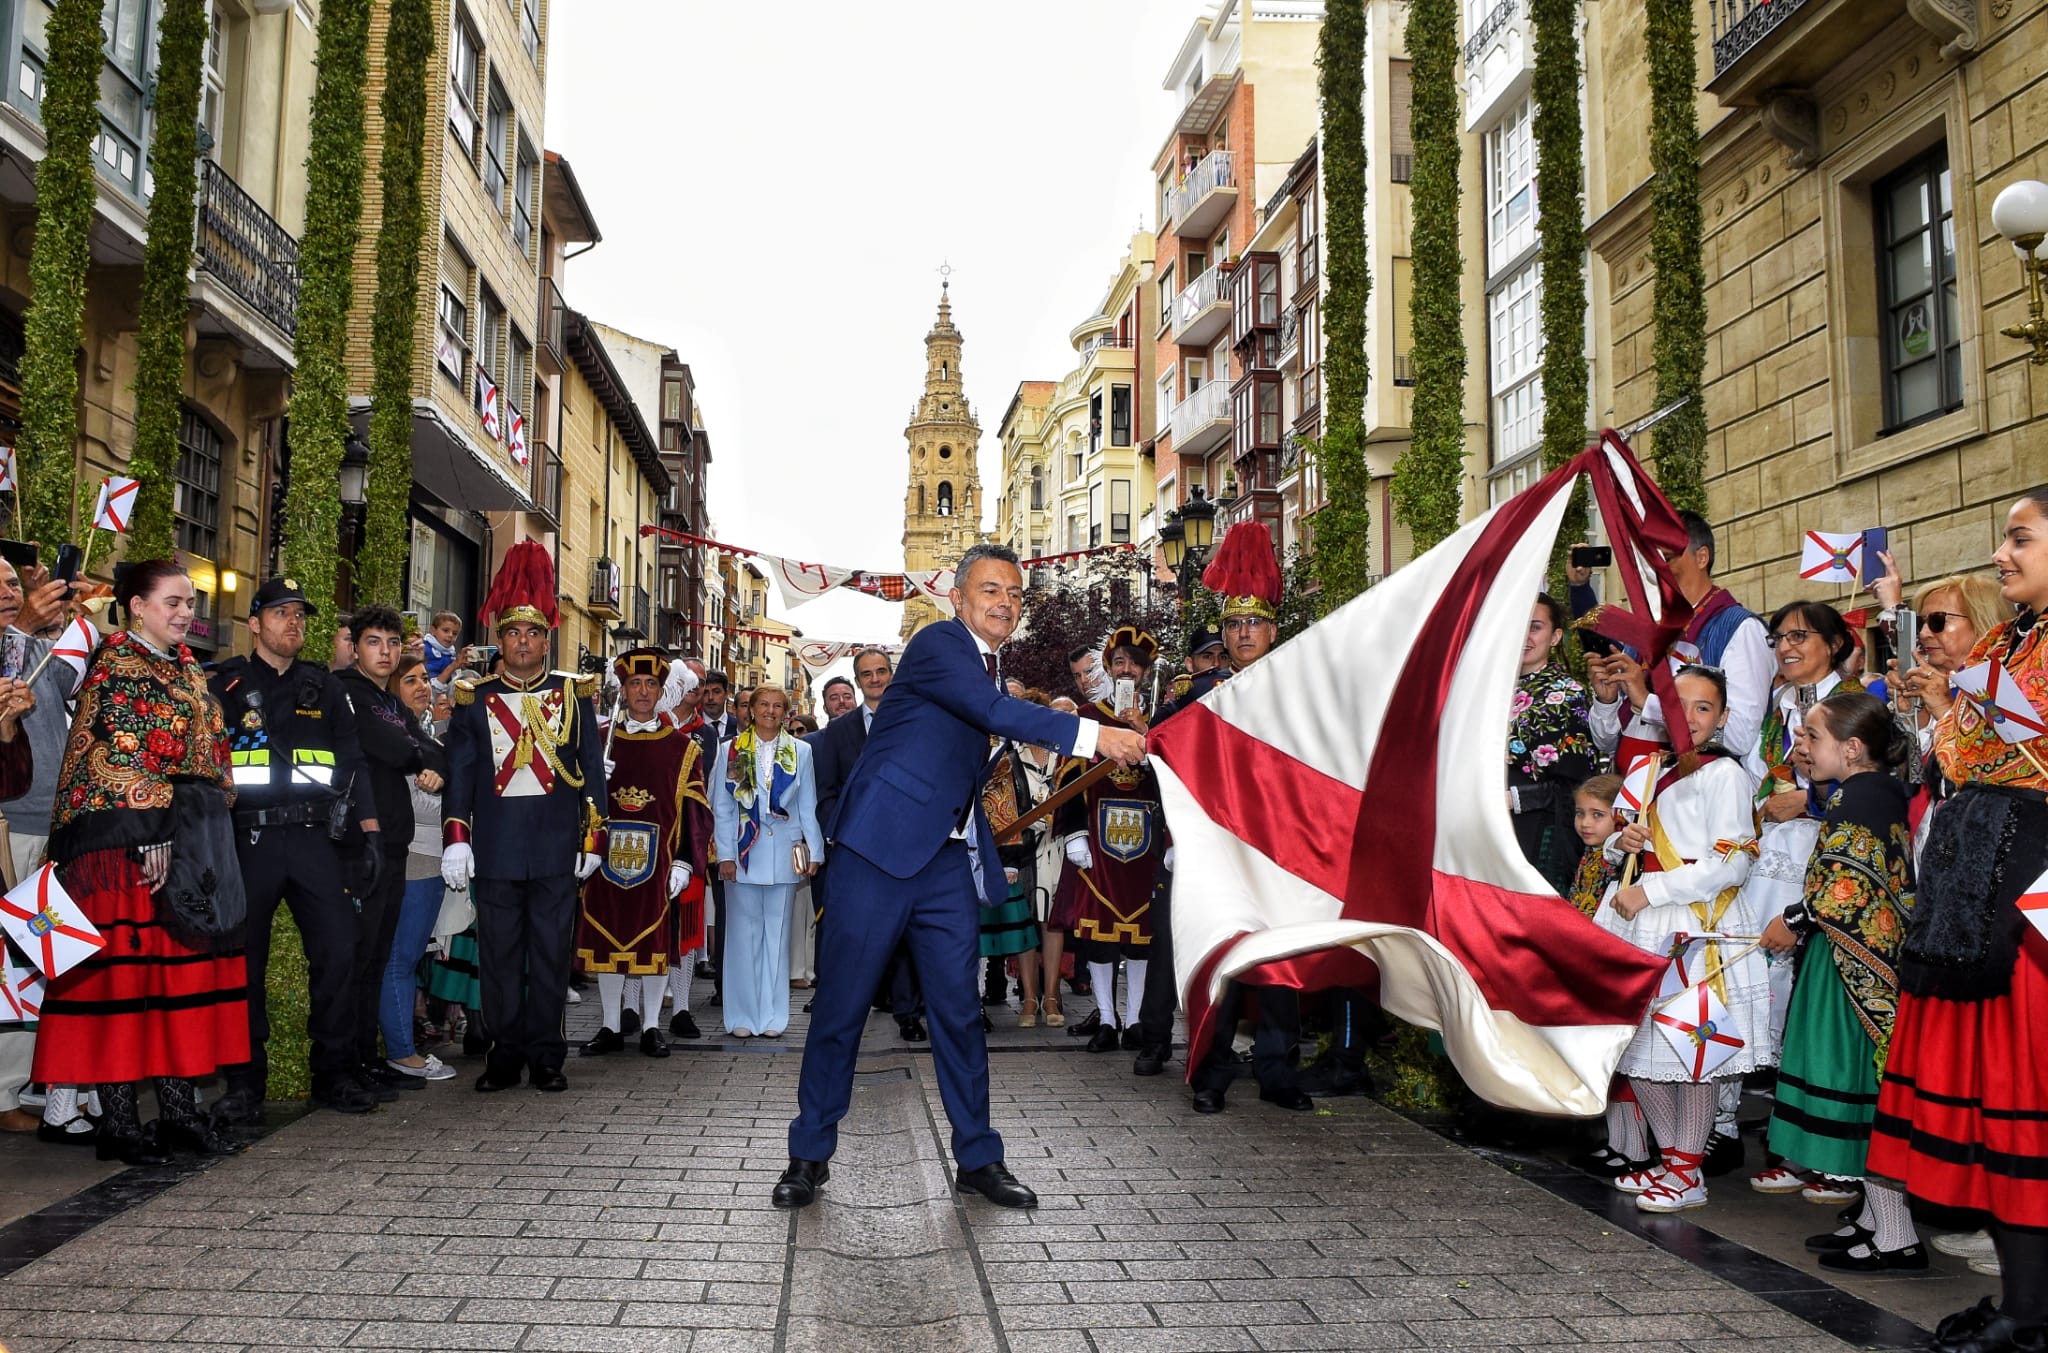 Imagen El alcalde dedica los banderazos a las madres logroñesas, al comercio y a la ciudad de Logroño del Ebro, del Camino, diverso, joven y de futuro que construimos entre todos